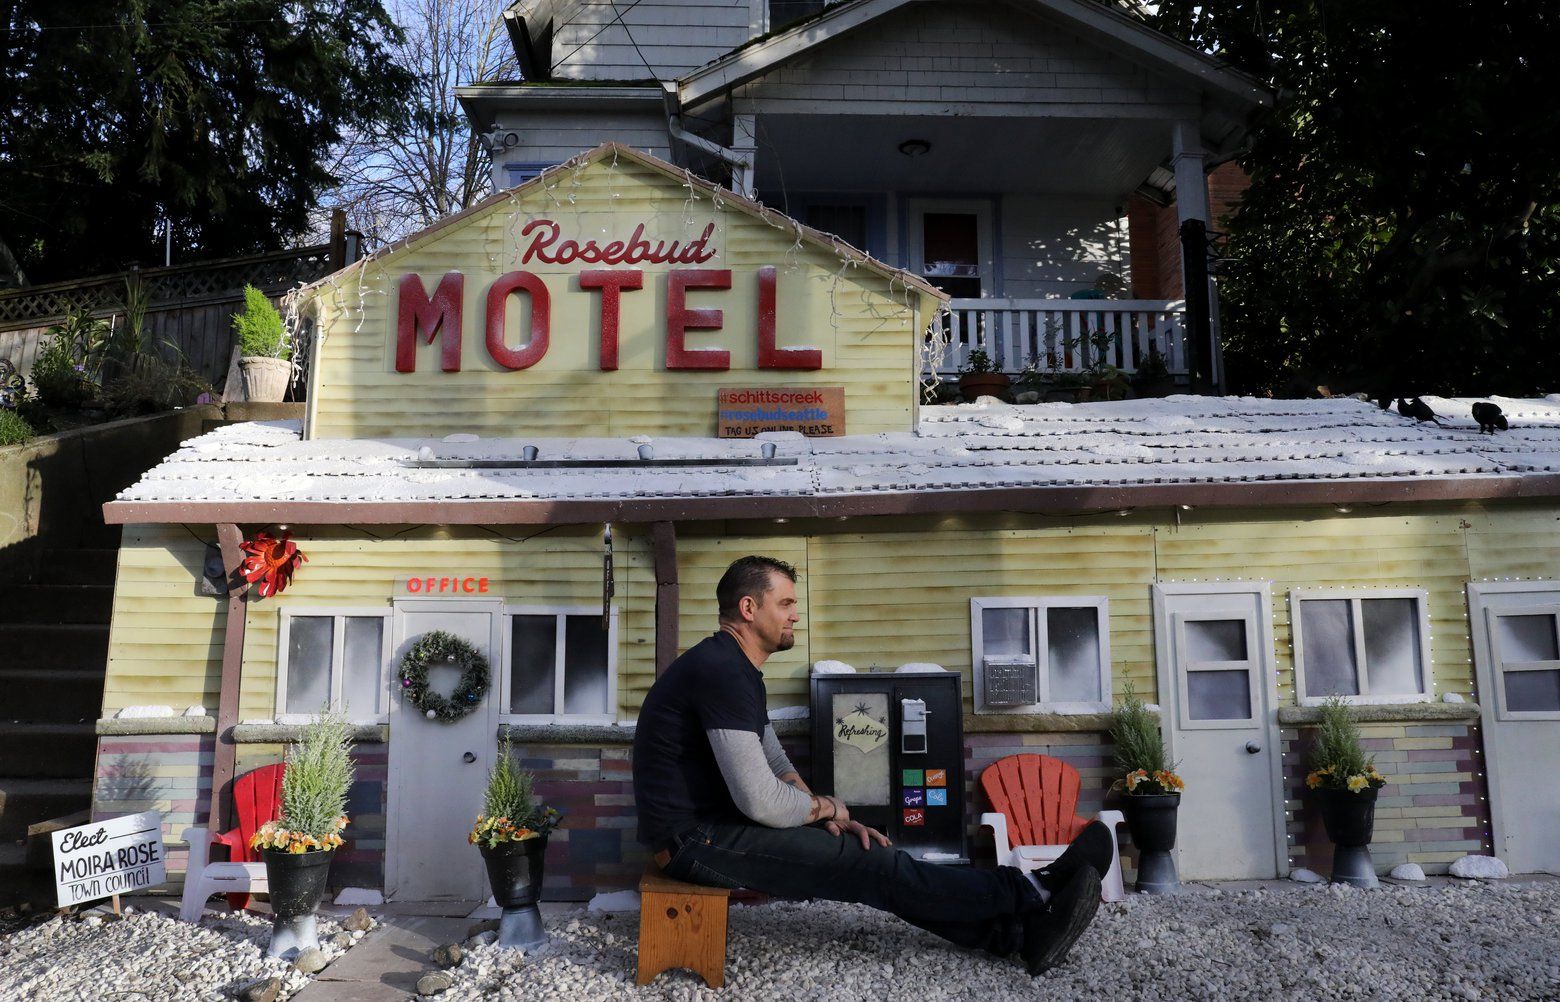 Seattle's 'Schitt's Creek' Rosebud Motel is back on Queen Anne